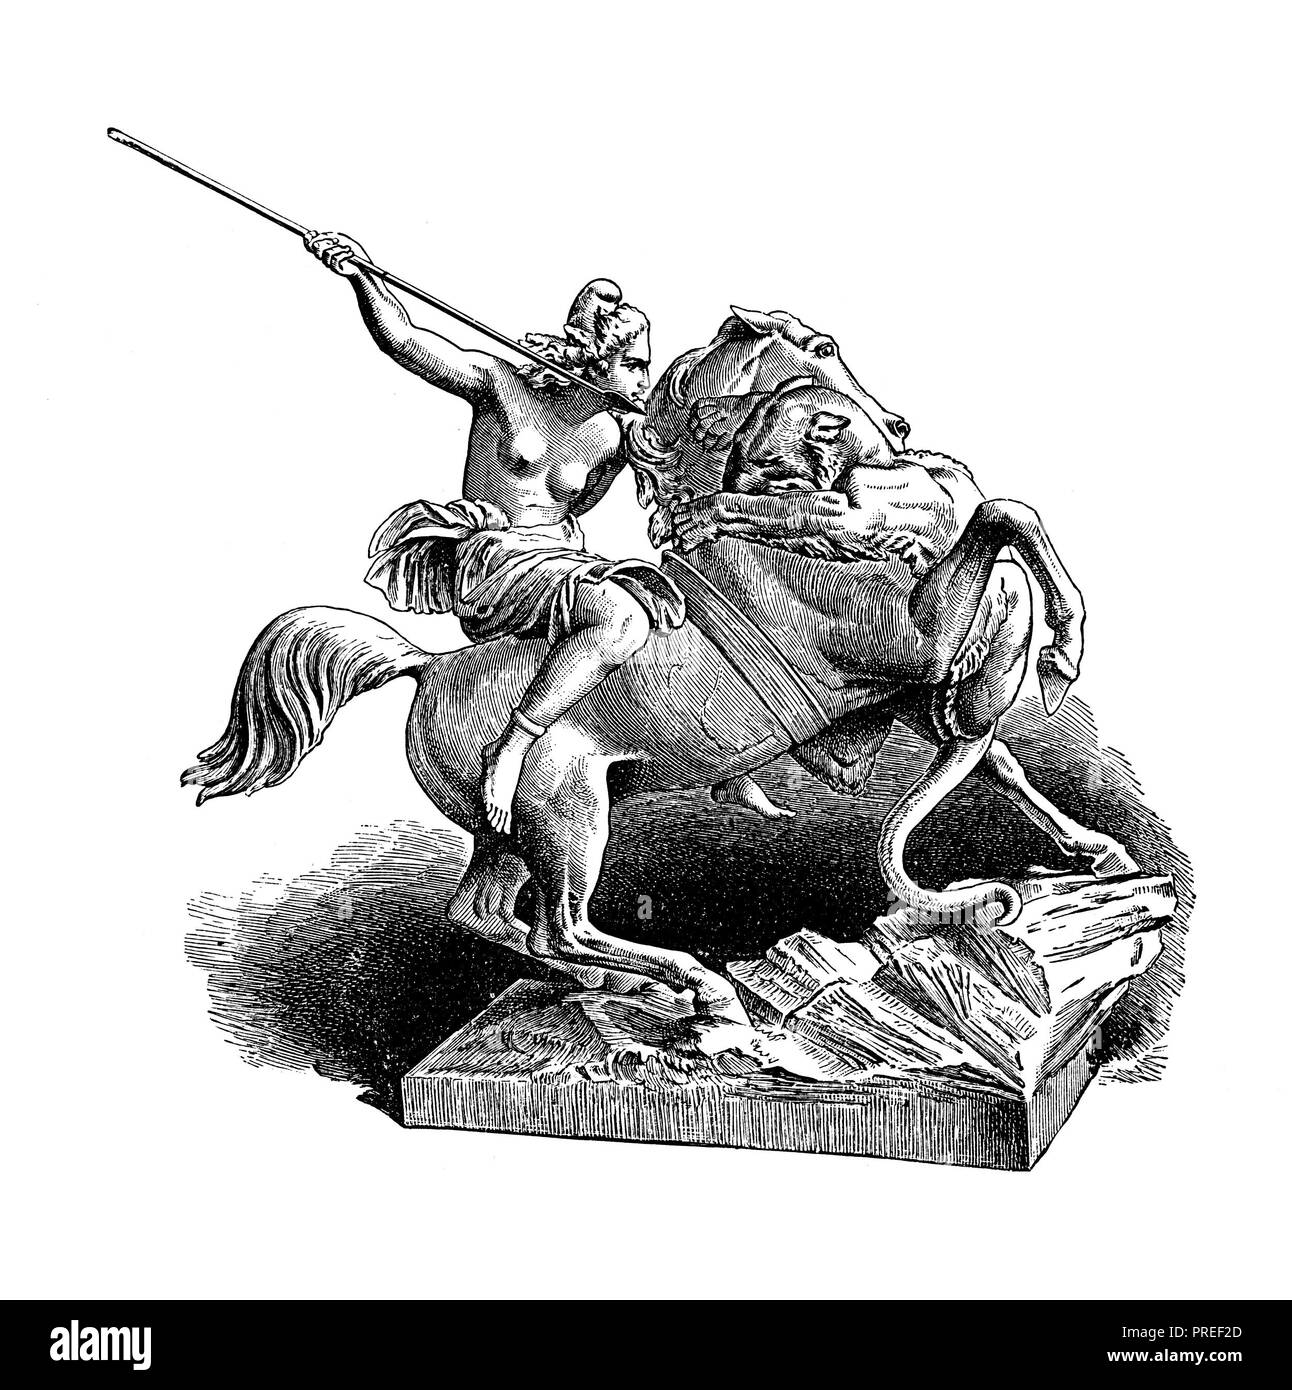 Illustrazione originale di Amazon, guerriera nella mitologia greca. Pubblicato in una storia pittorica del mondo grandi nazioni: fin dalle prime date Foto Stock